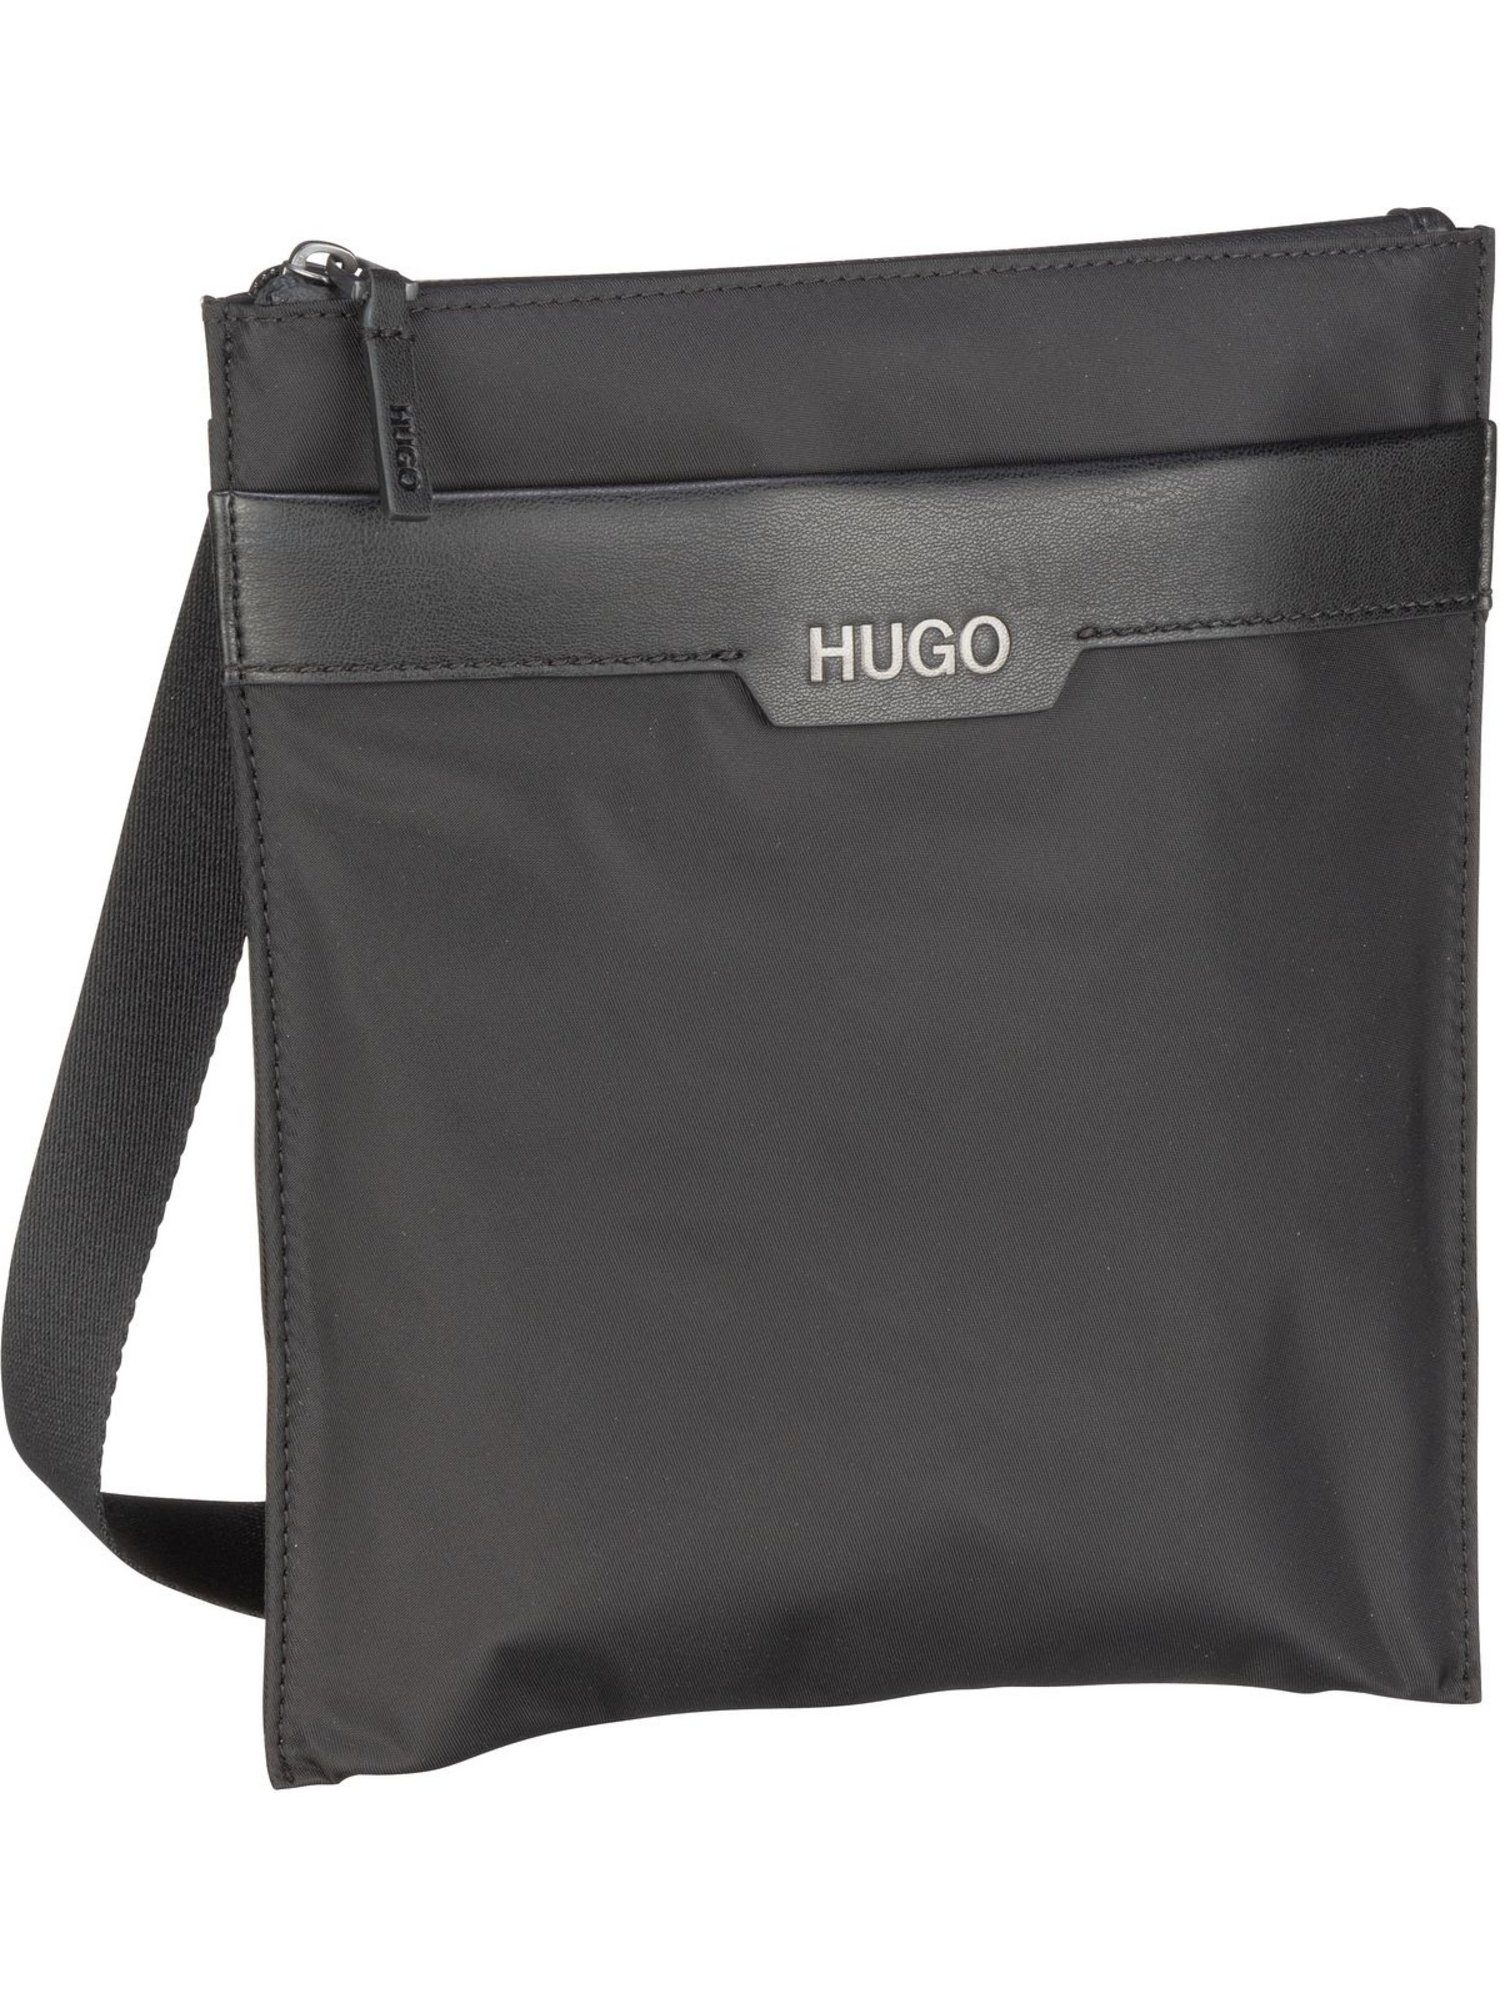 HUGO BOSS Herren Taschen online kaufen | OTTO